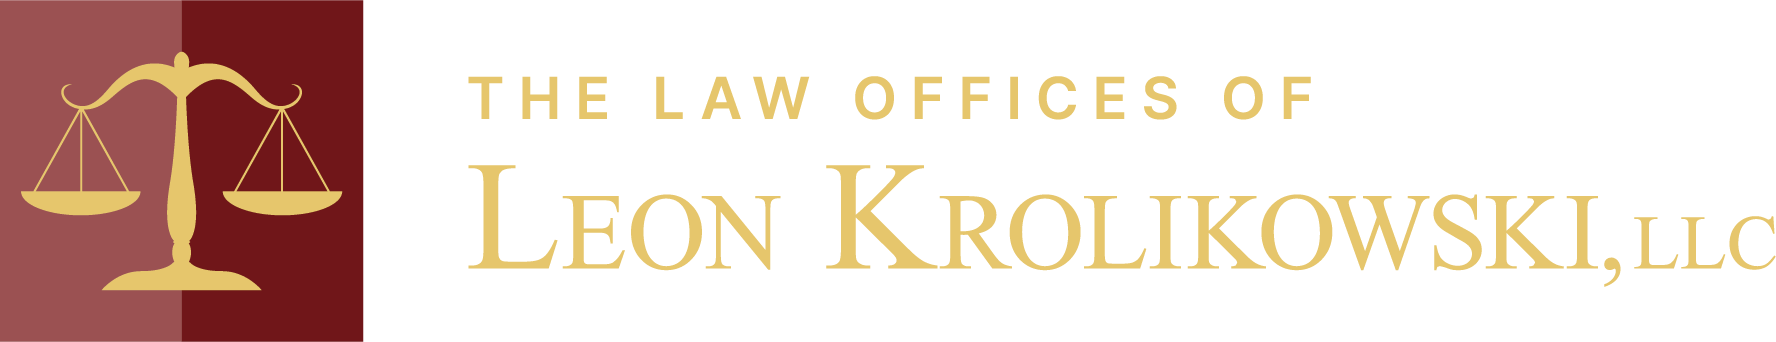 The Law Offices of Leon Krolikowski, LLC